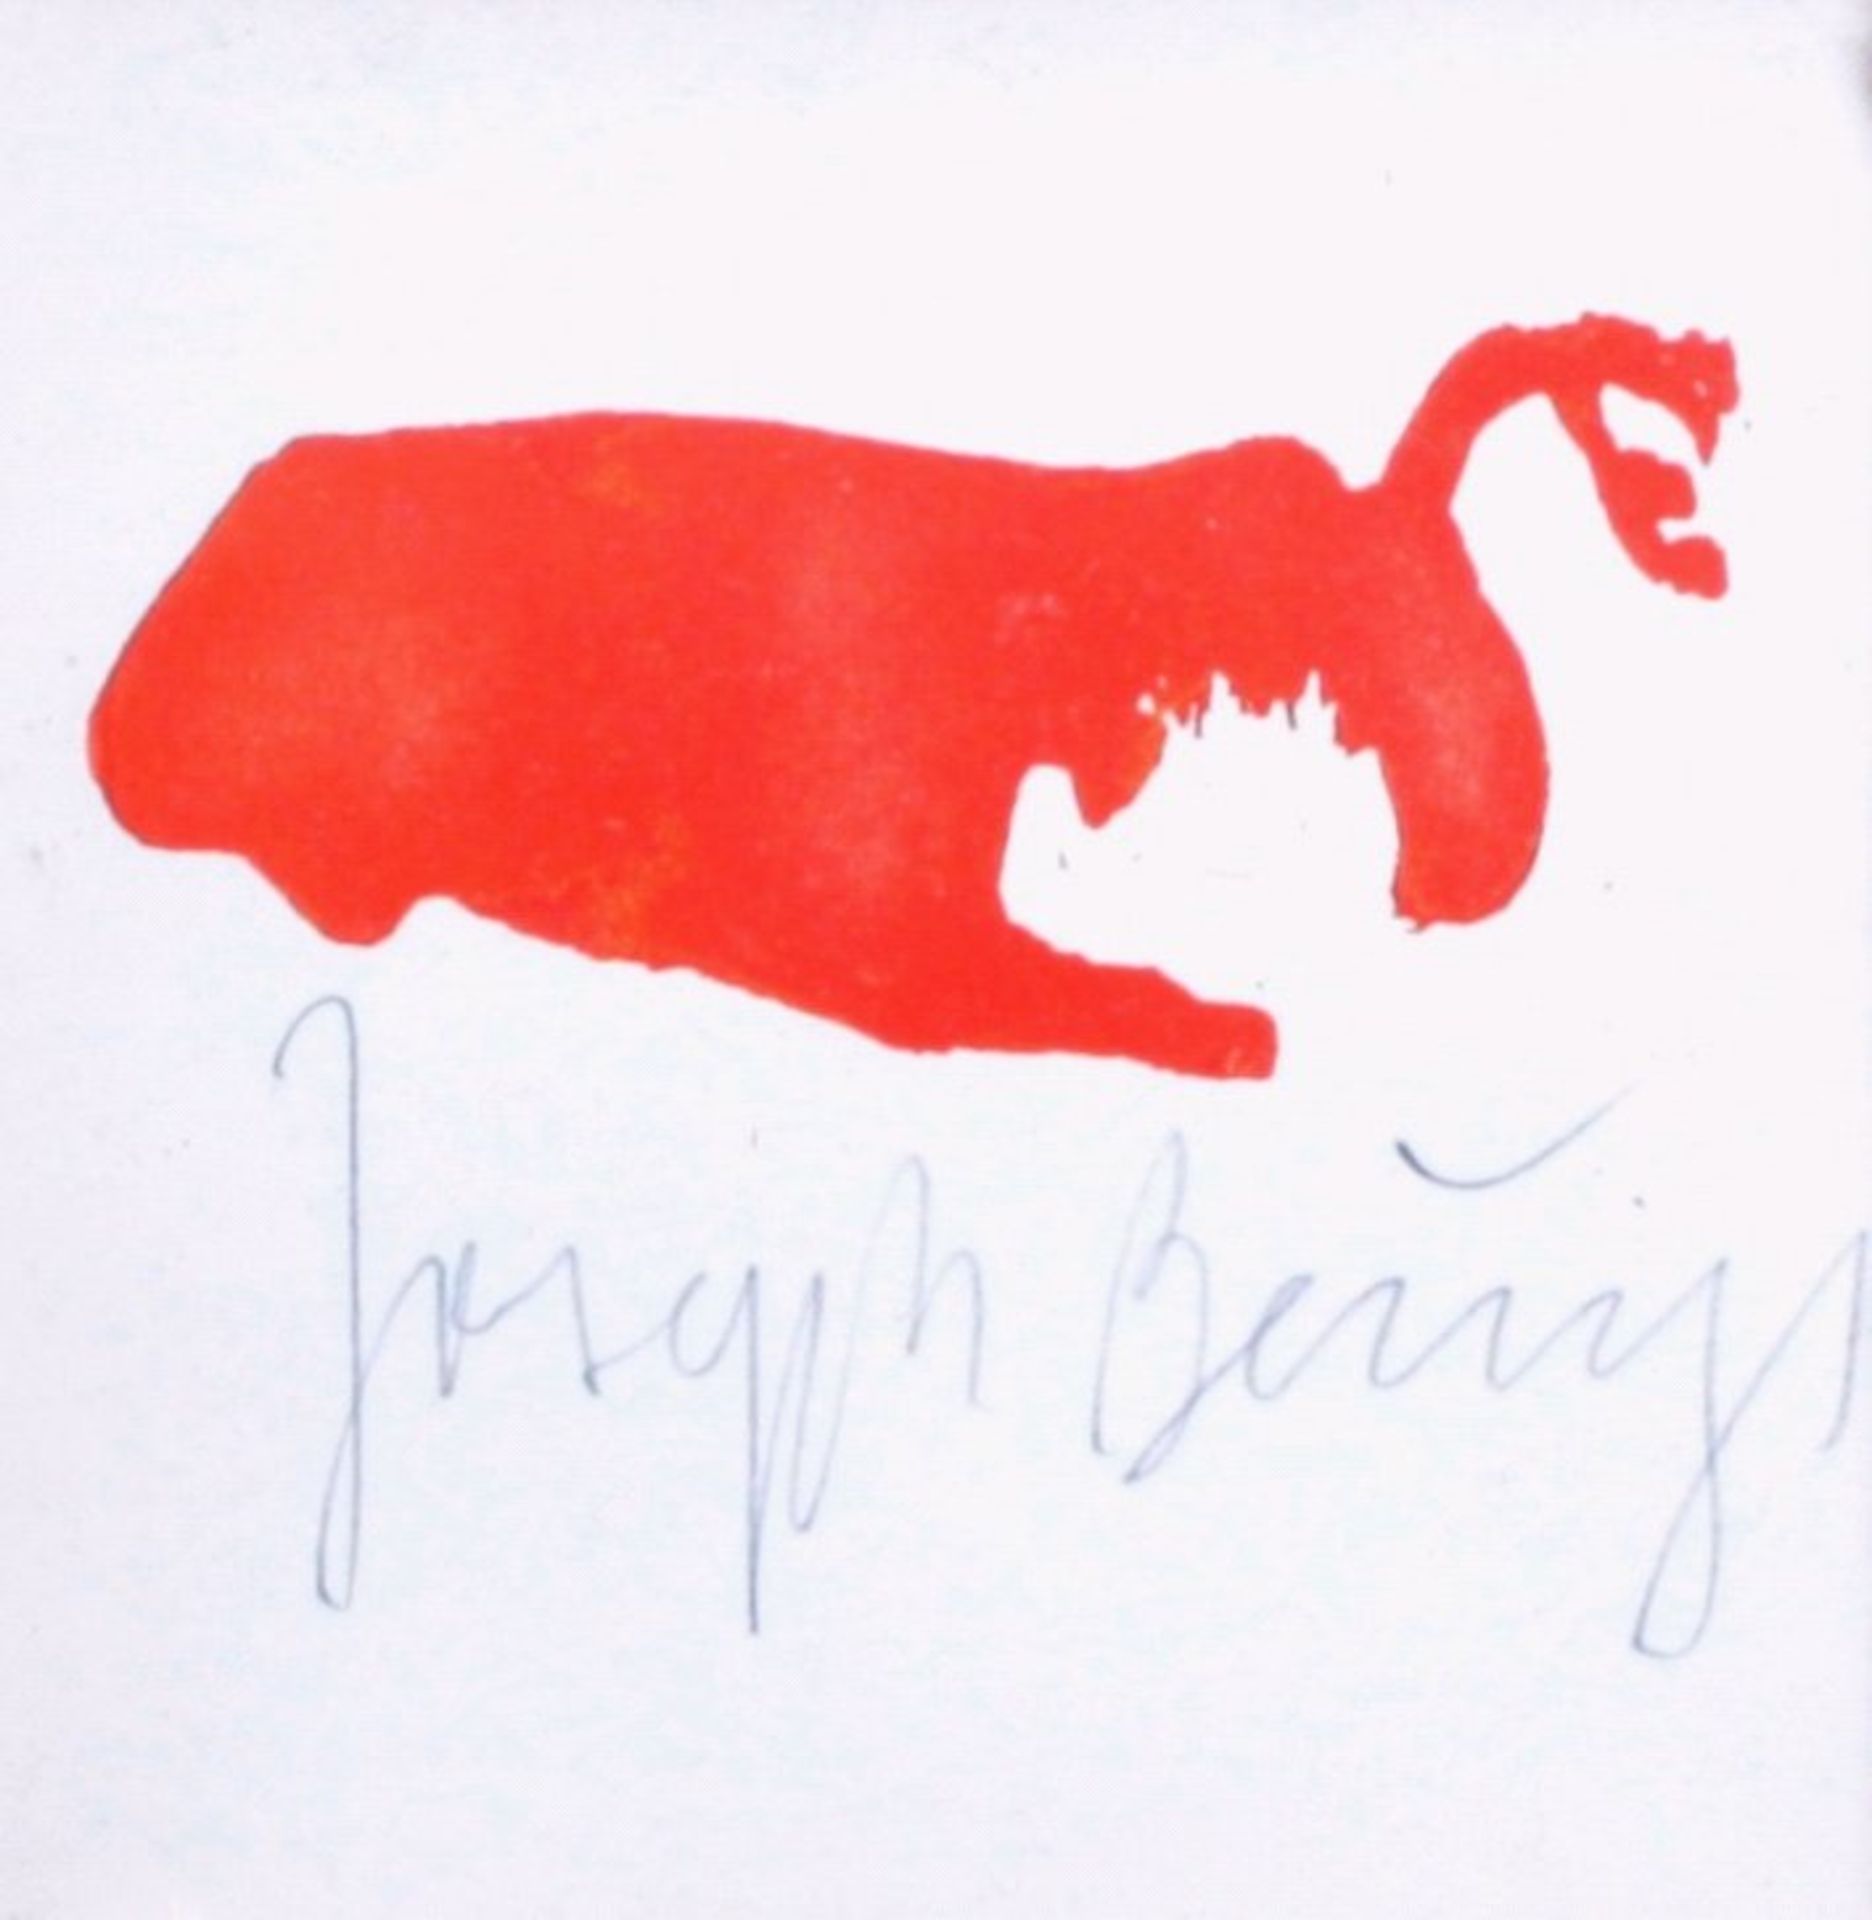 Beuys Joseph (1921-1986)Grafik Multiple, Farboffset, mit Bleistift signiert,gerahmt, ca. 9x9,5